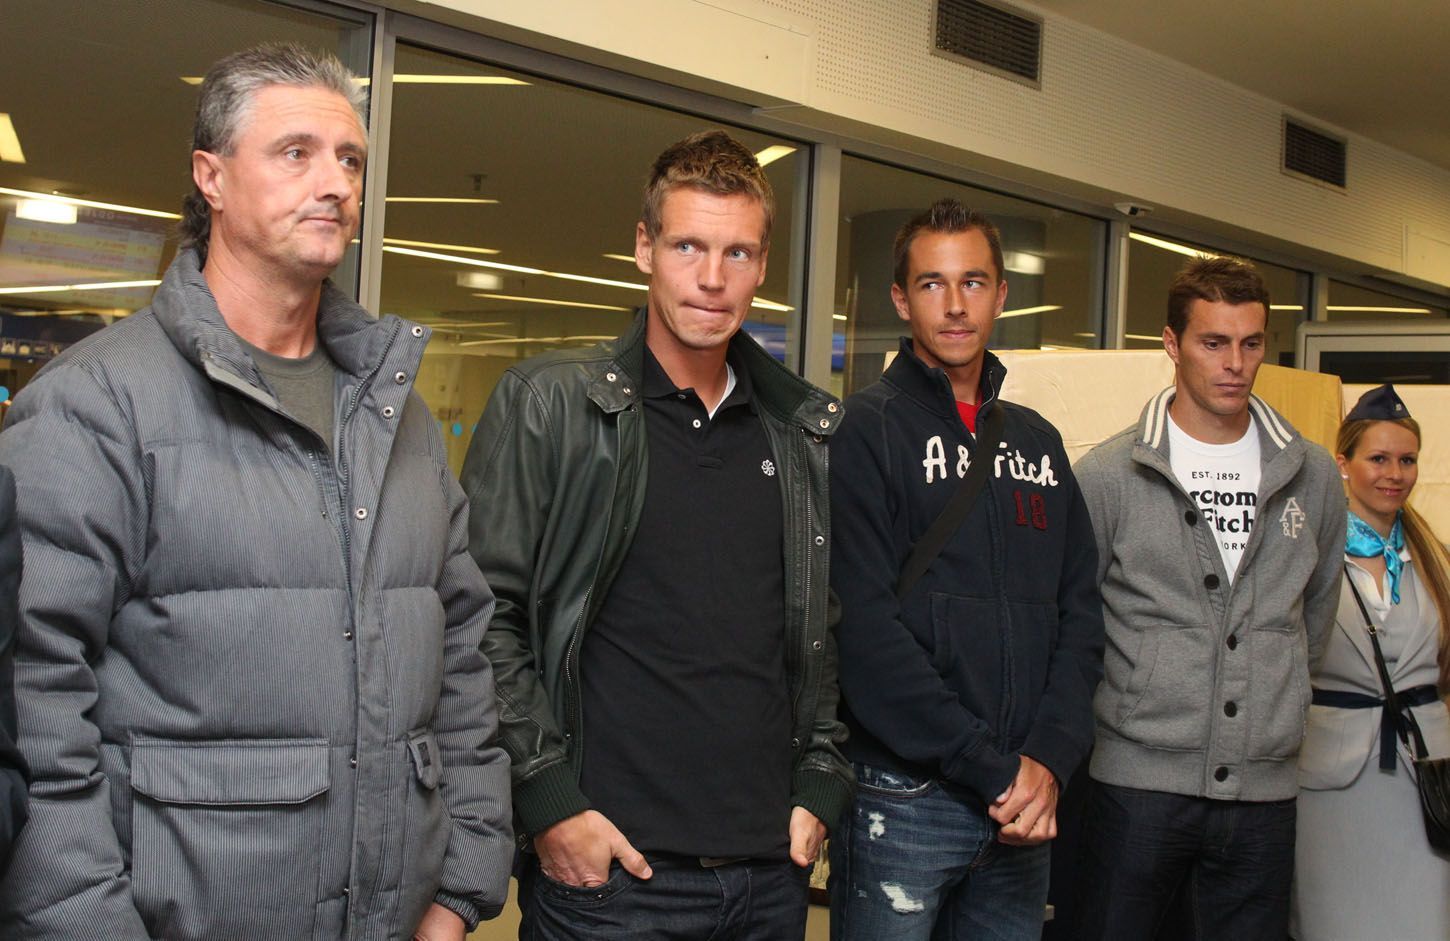 Daviscupová reprezentace na Hlavním nádraží: Navrátil, Berdych, Rosol, Čermák